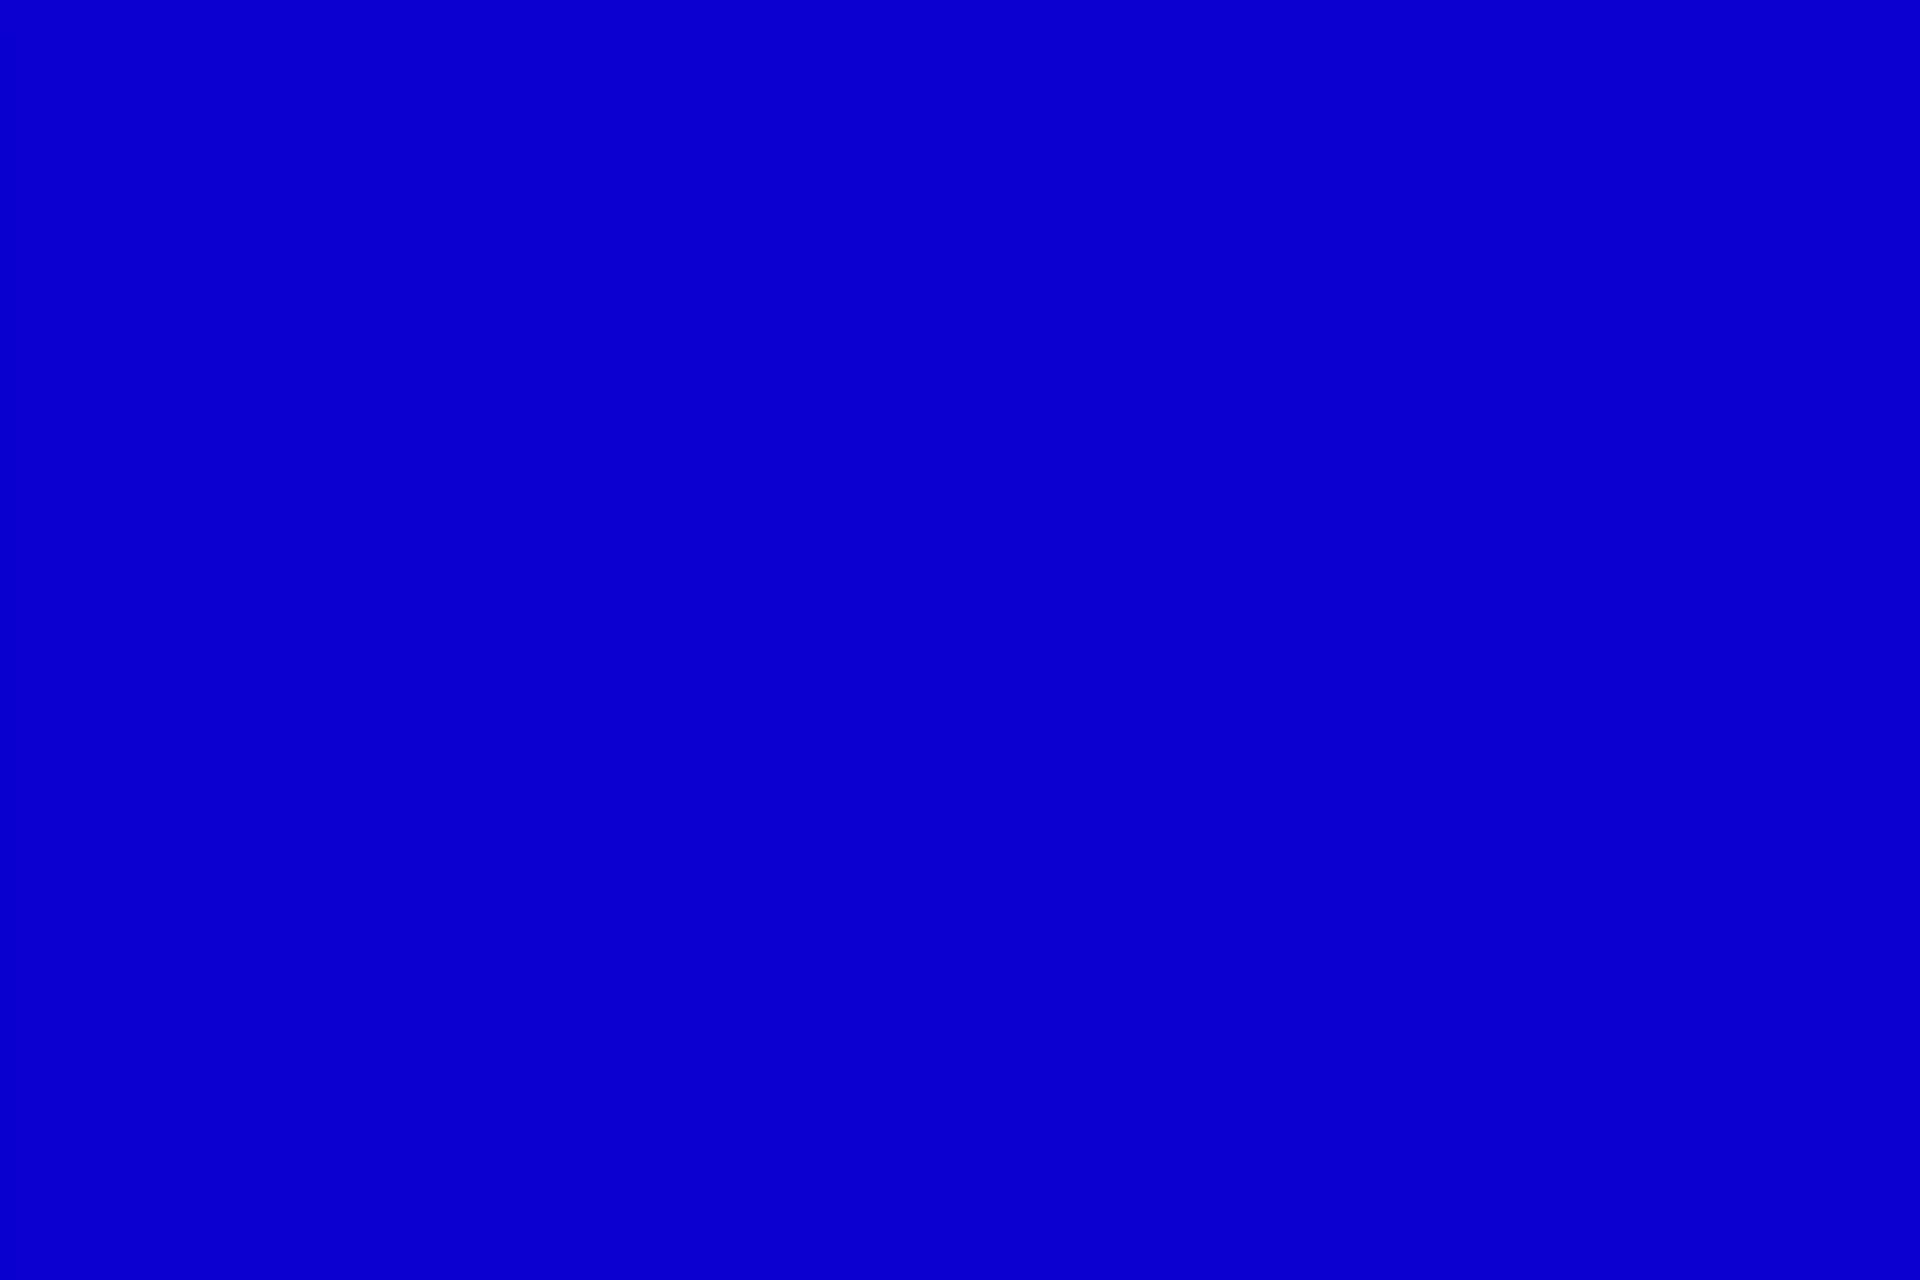 Технический цвет. Синий цвет однотонный. Чисто синий фон. Чистый синий цвет. Сплошной синий цвет.